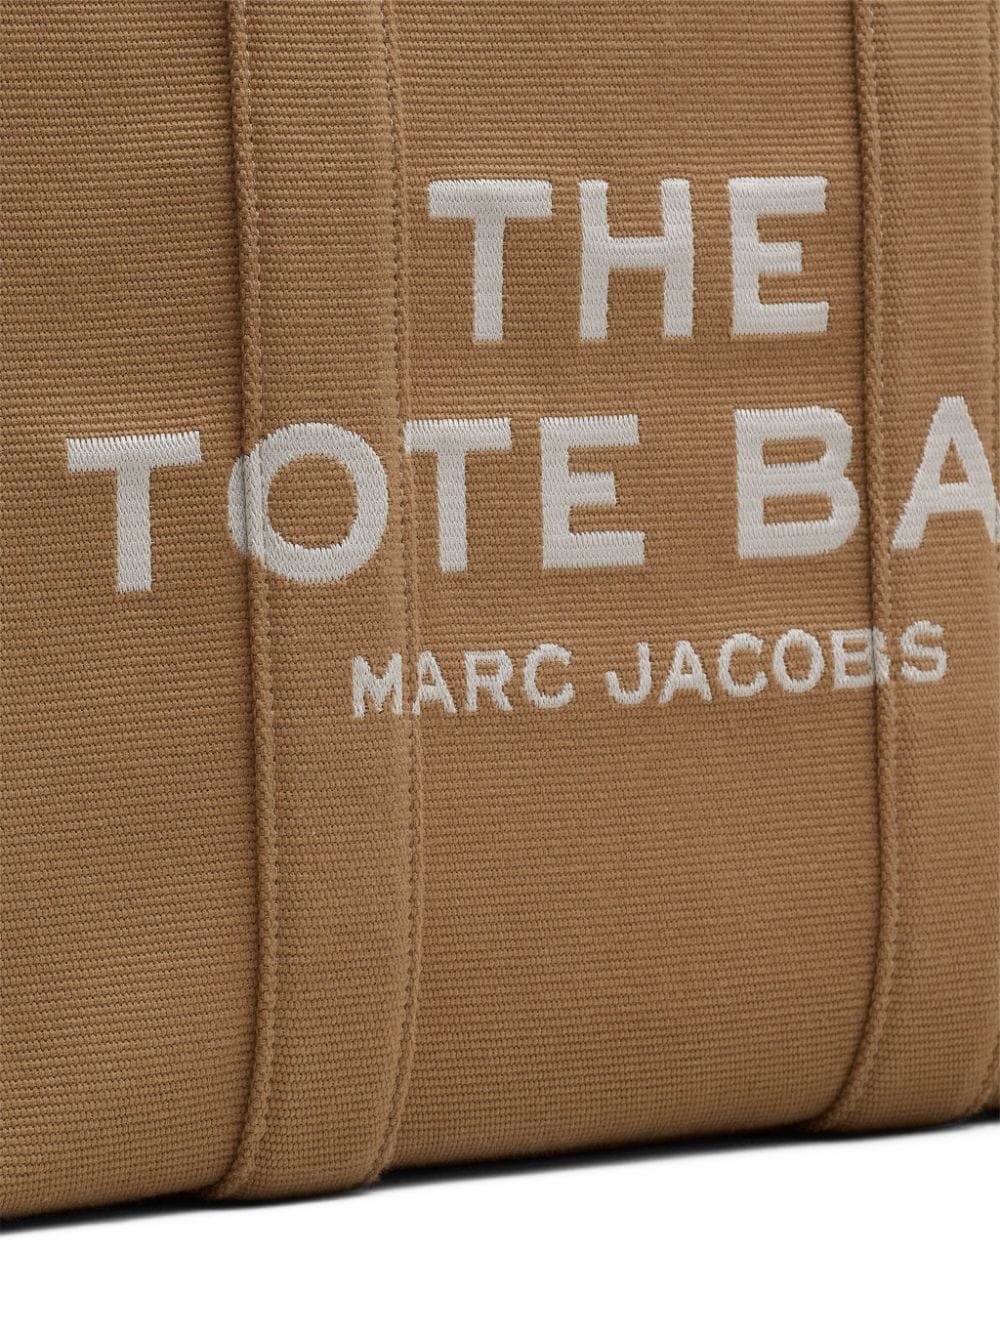 The Jacquard large tote bag